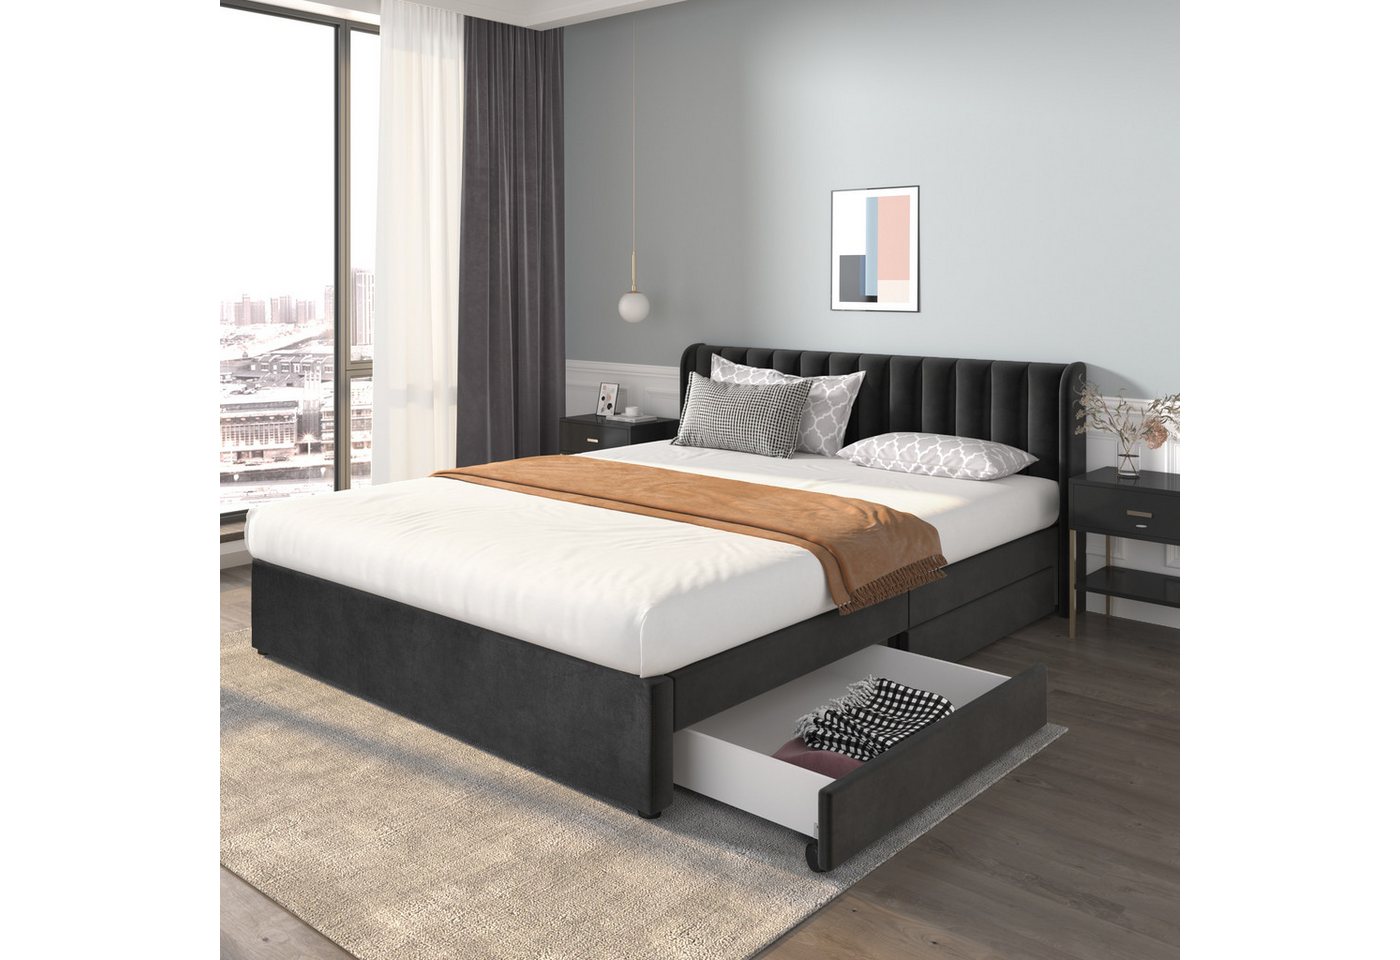 MODFU Polsterbett Doppelbett Stauraumbett Bett mit Lattenrost ohne Matratze (180 x 200 cm), Schlichter und stilvoller Samt-Look von MODFU